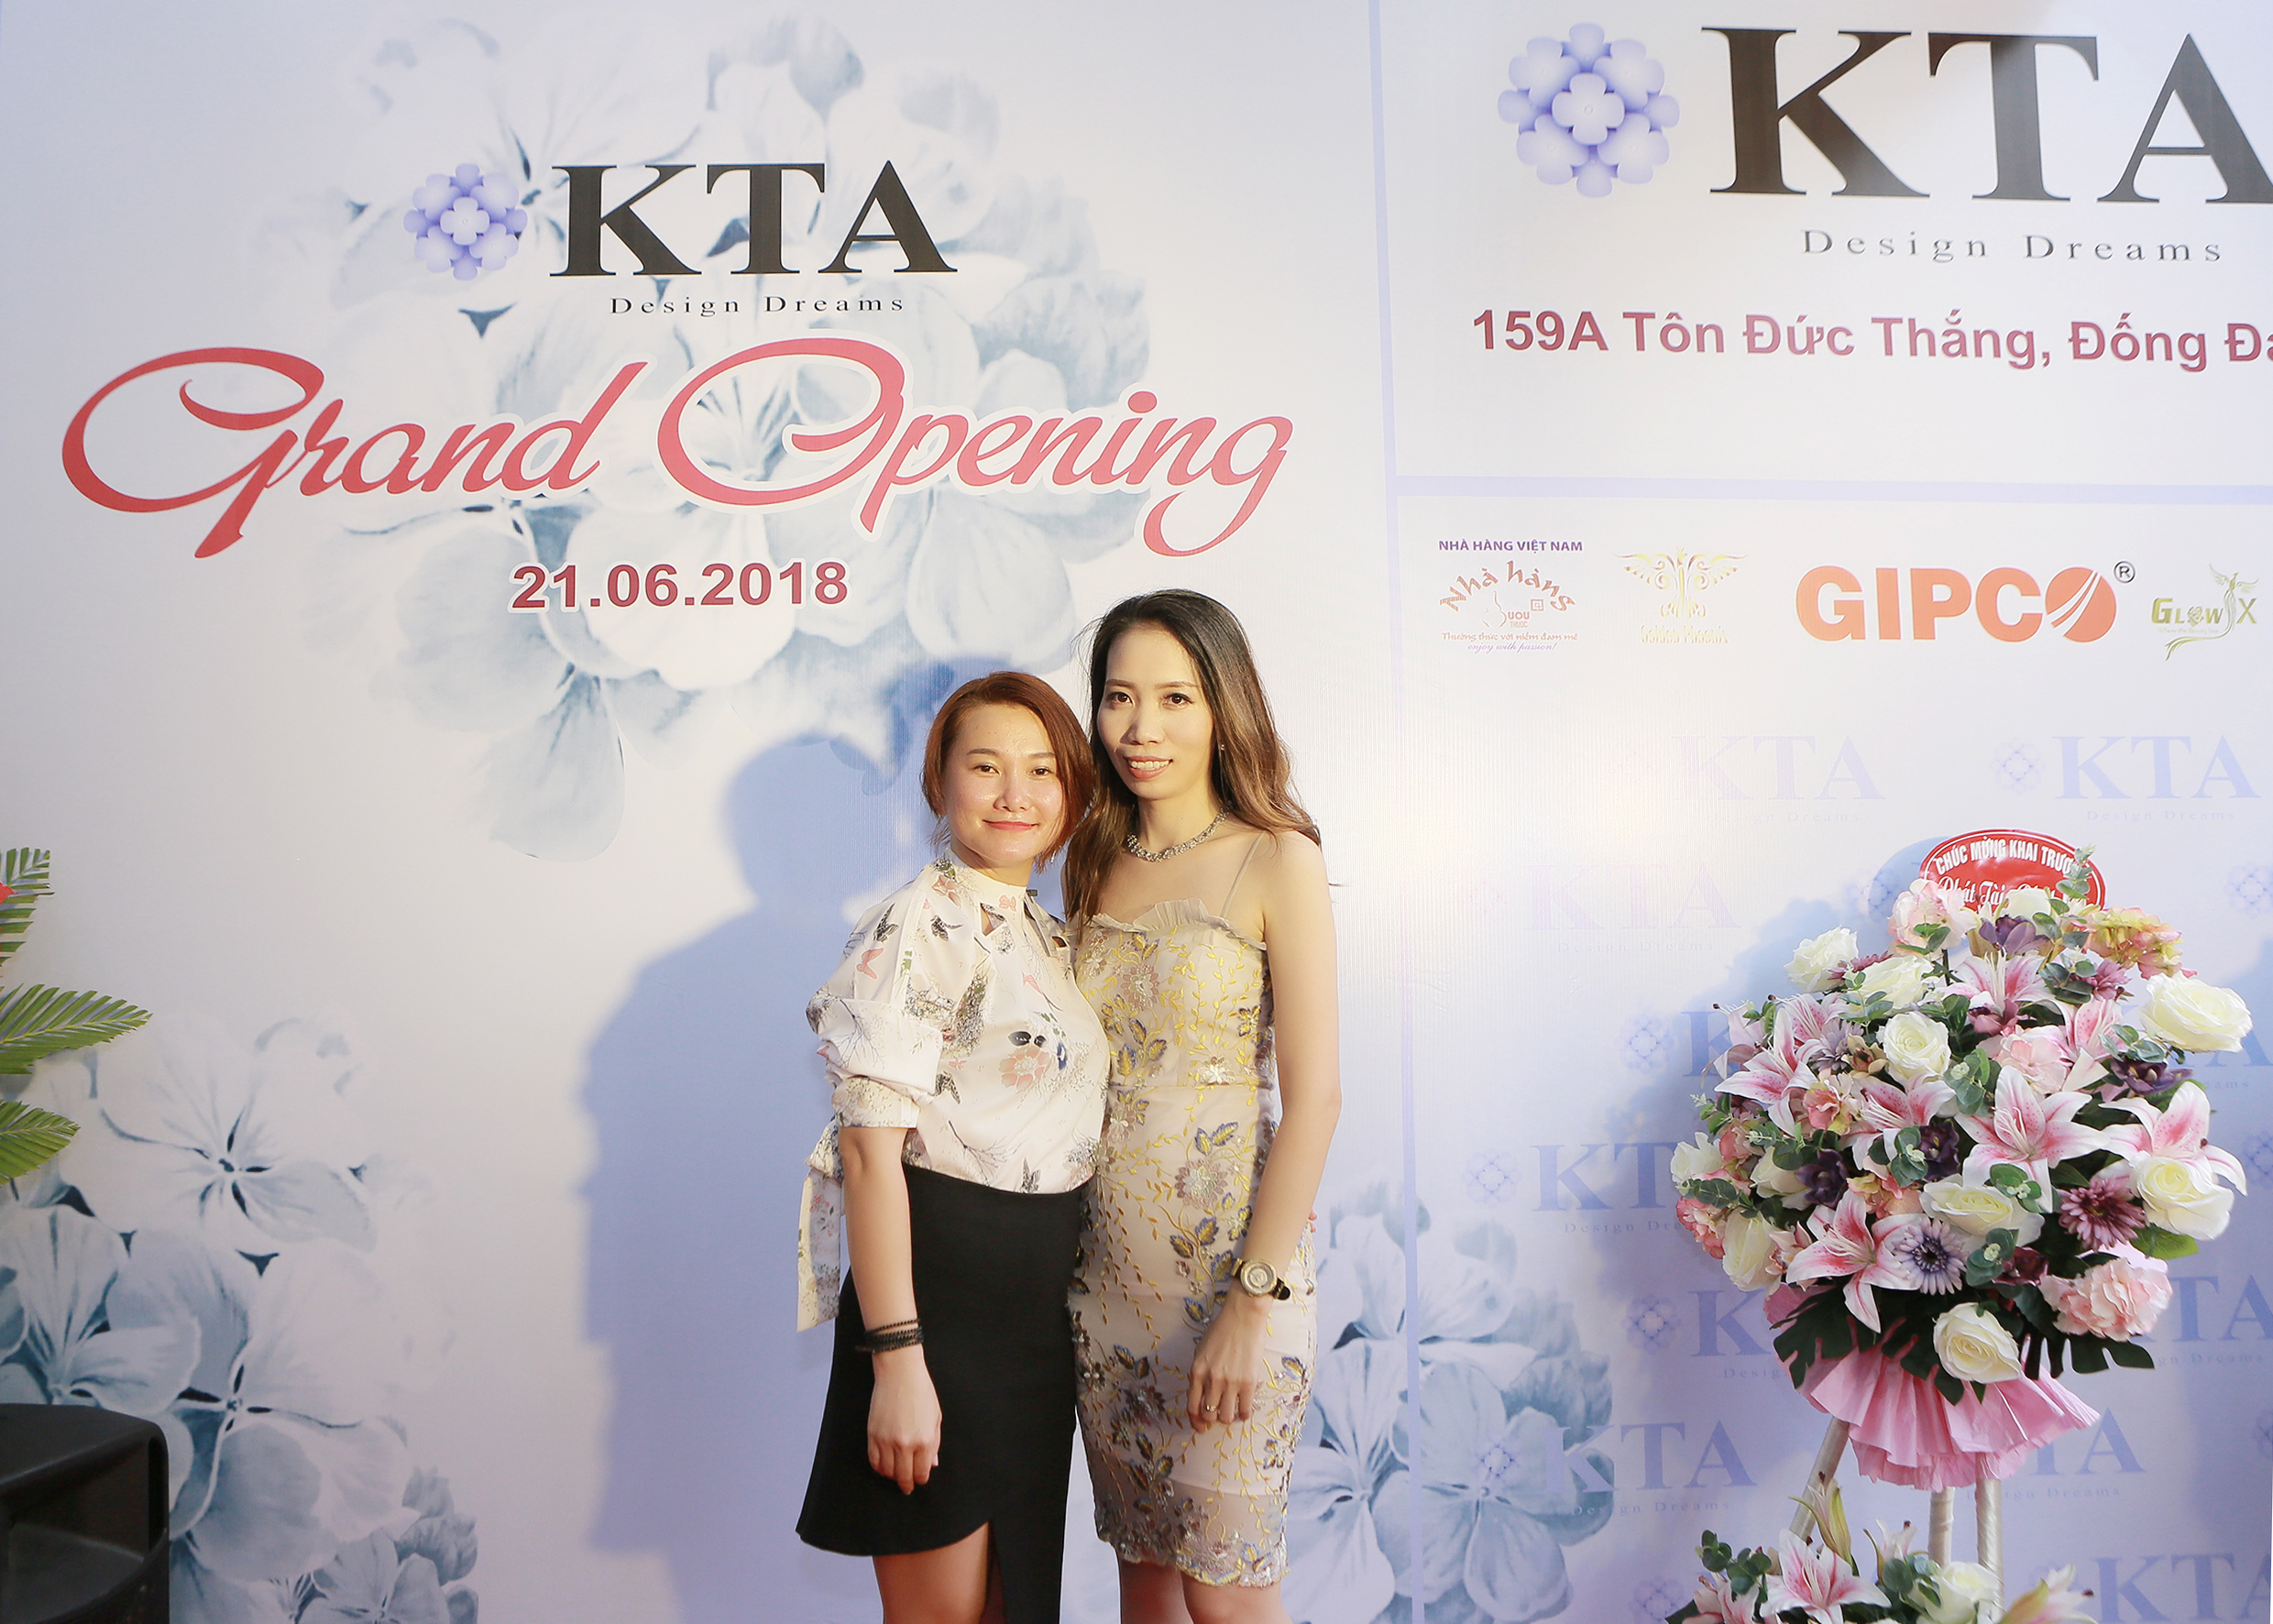 KTA Fashion khai trương showroom mới tại Hà Nội